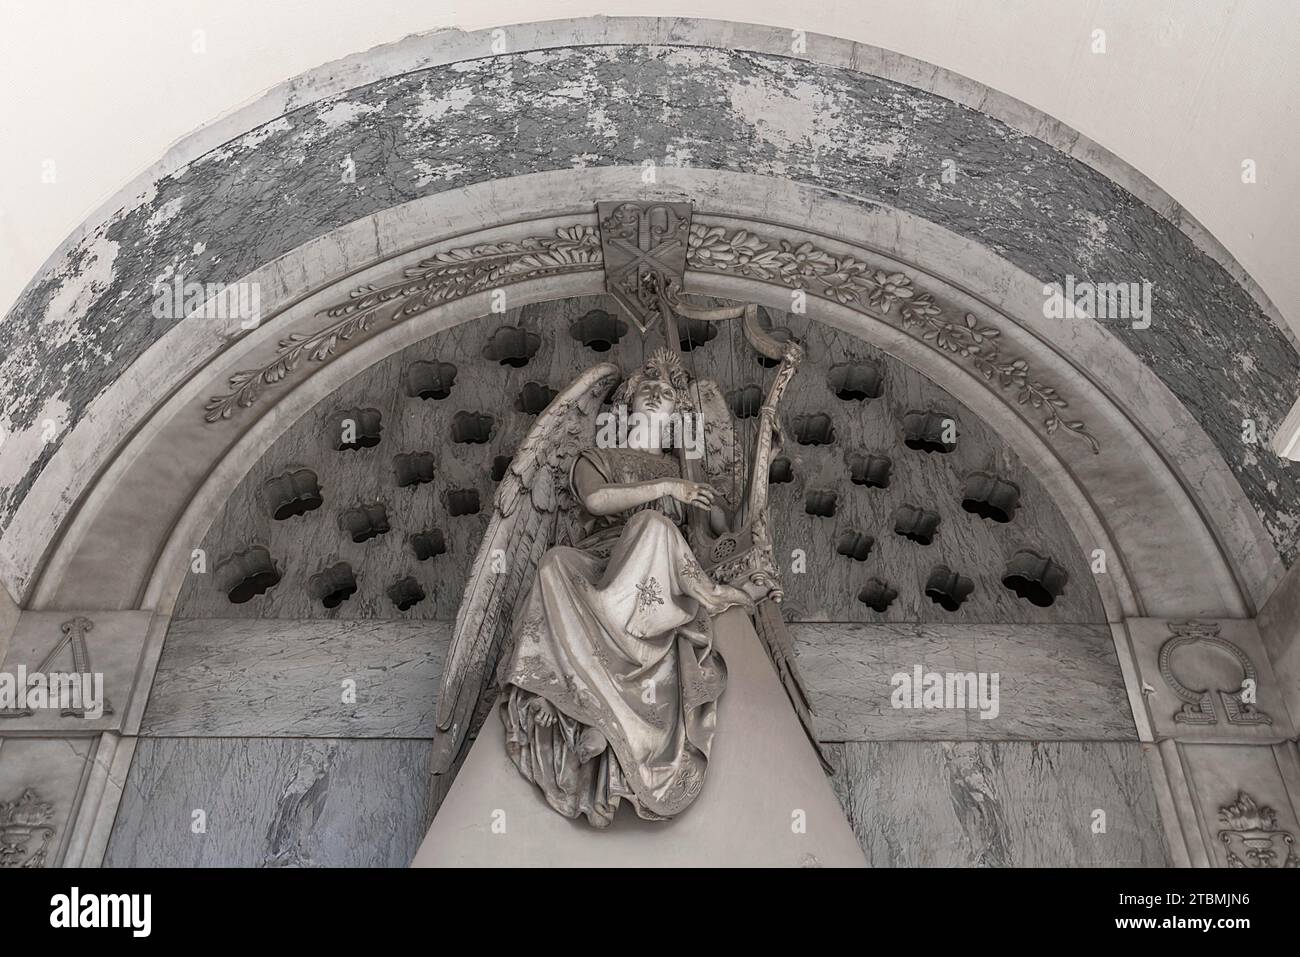 Ange jouant de la harpe, sculpture sur une tombe familiale, cimetière monumental, Cimitero monumentale di Staglieno), Gênes, Italie Banque D'Images